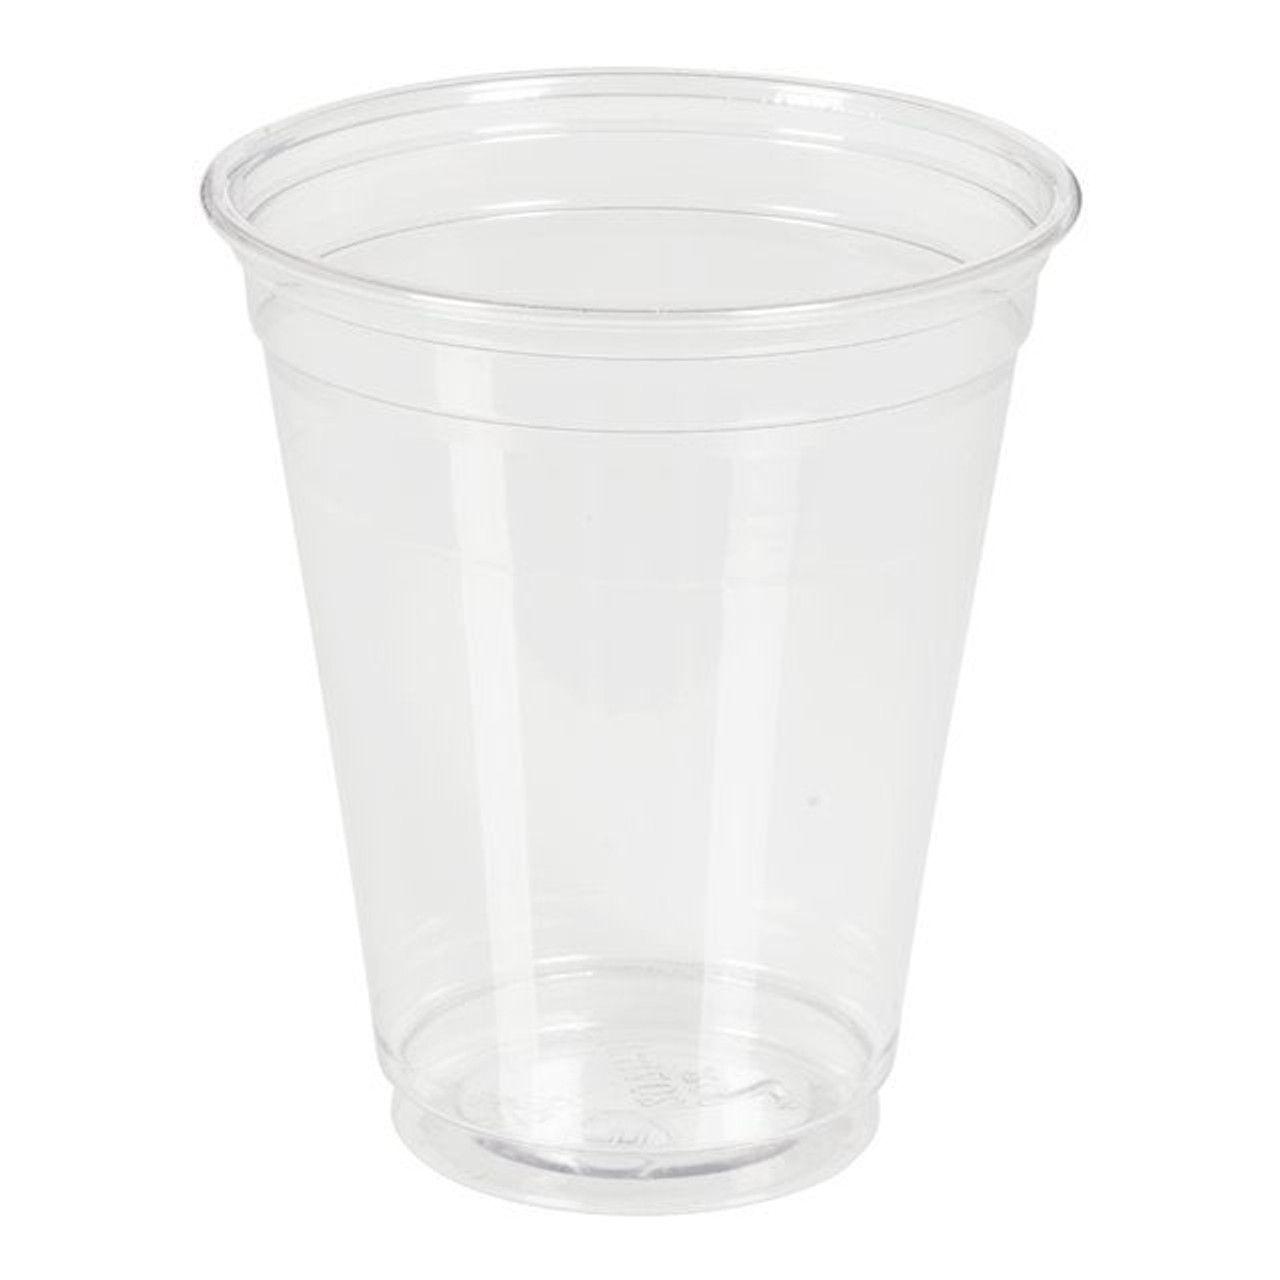 Pactiv 7oz Clear Polyethylene Plastic Cups | 50UN/Unit, 20 Units/Case